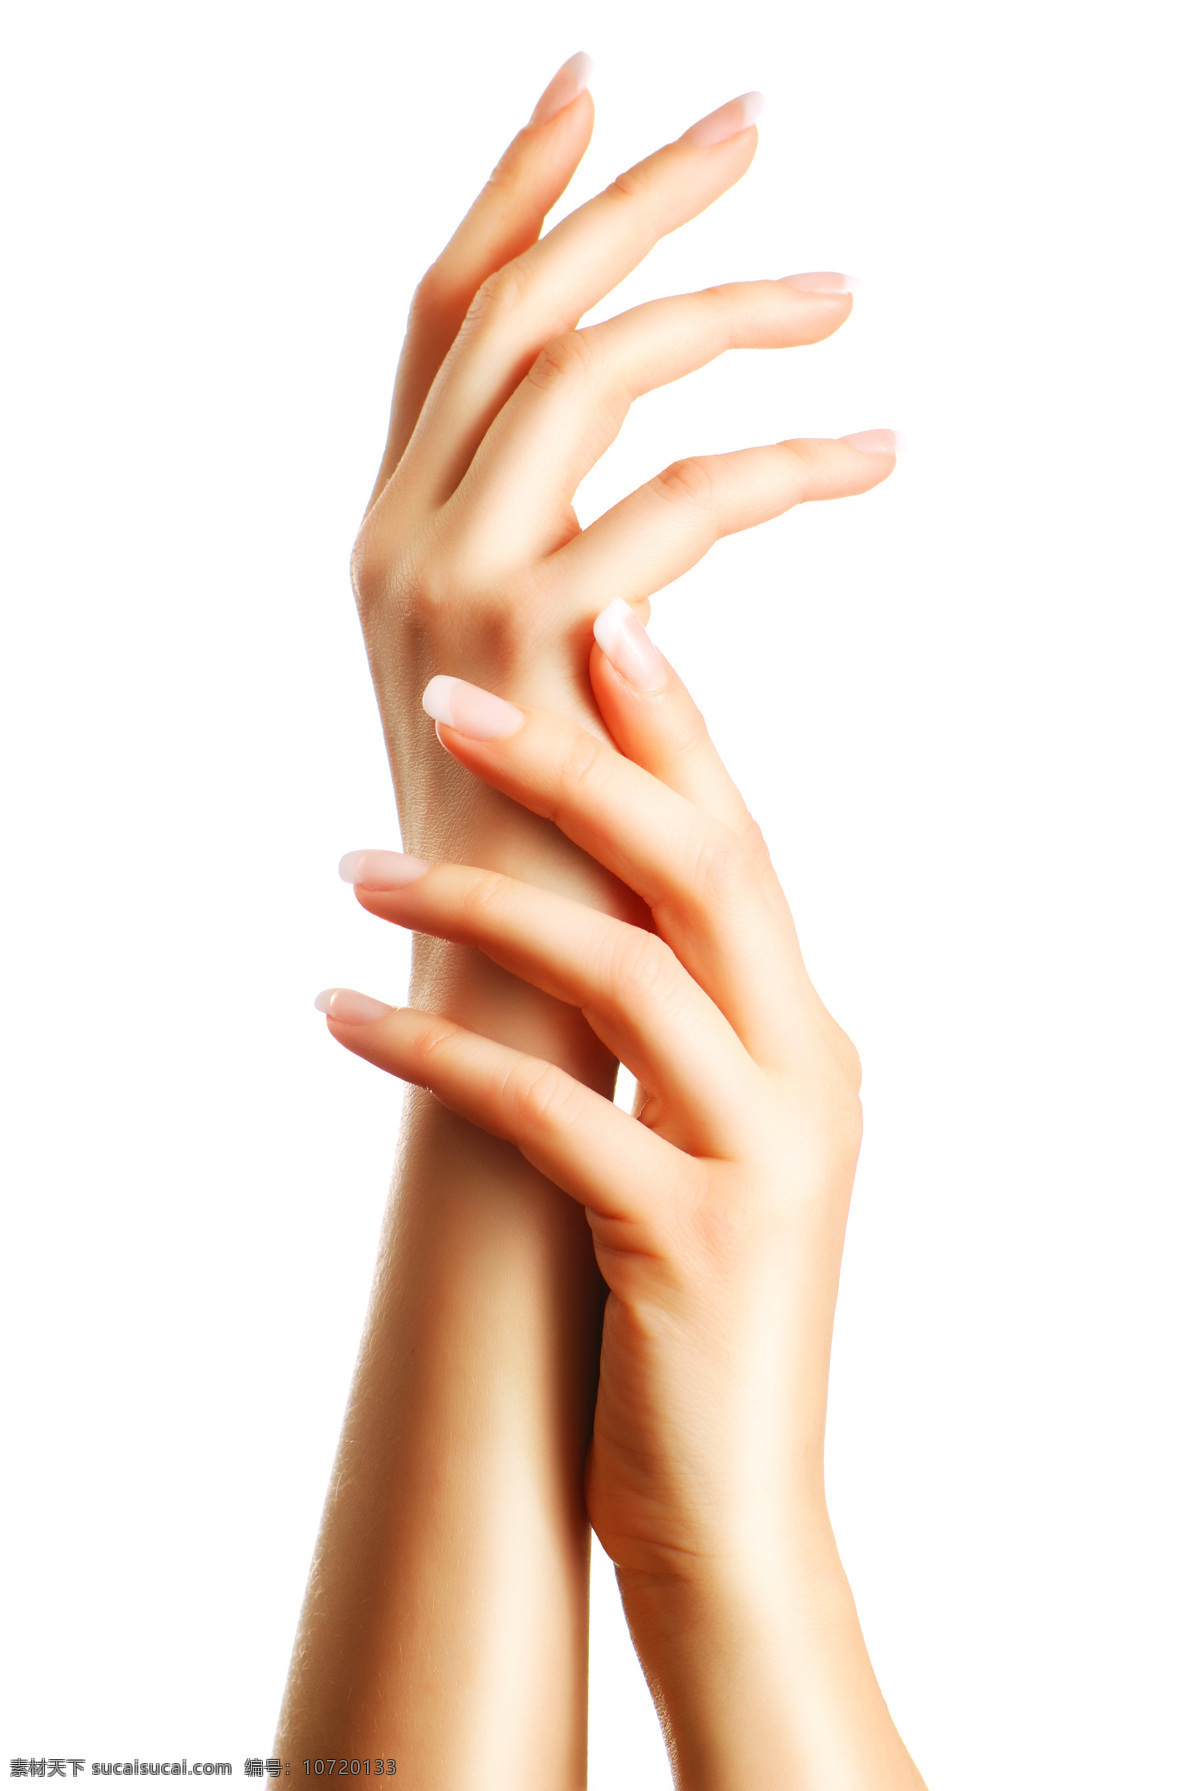 双 美手 特写 cosmetic 化妆品 手势 手 一双手 手模 纤纤玉指 手部护理 做护理 高清图片 人体器官图 人物图片